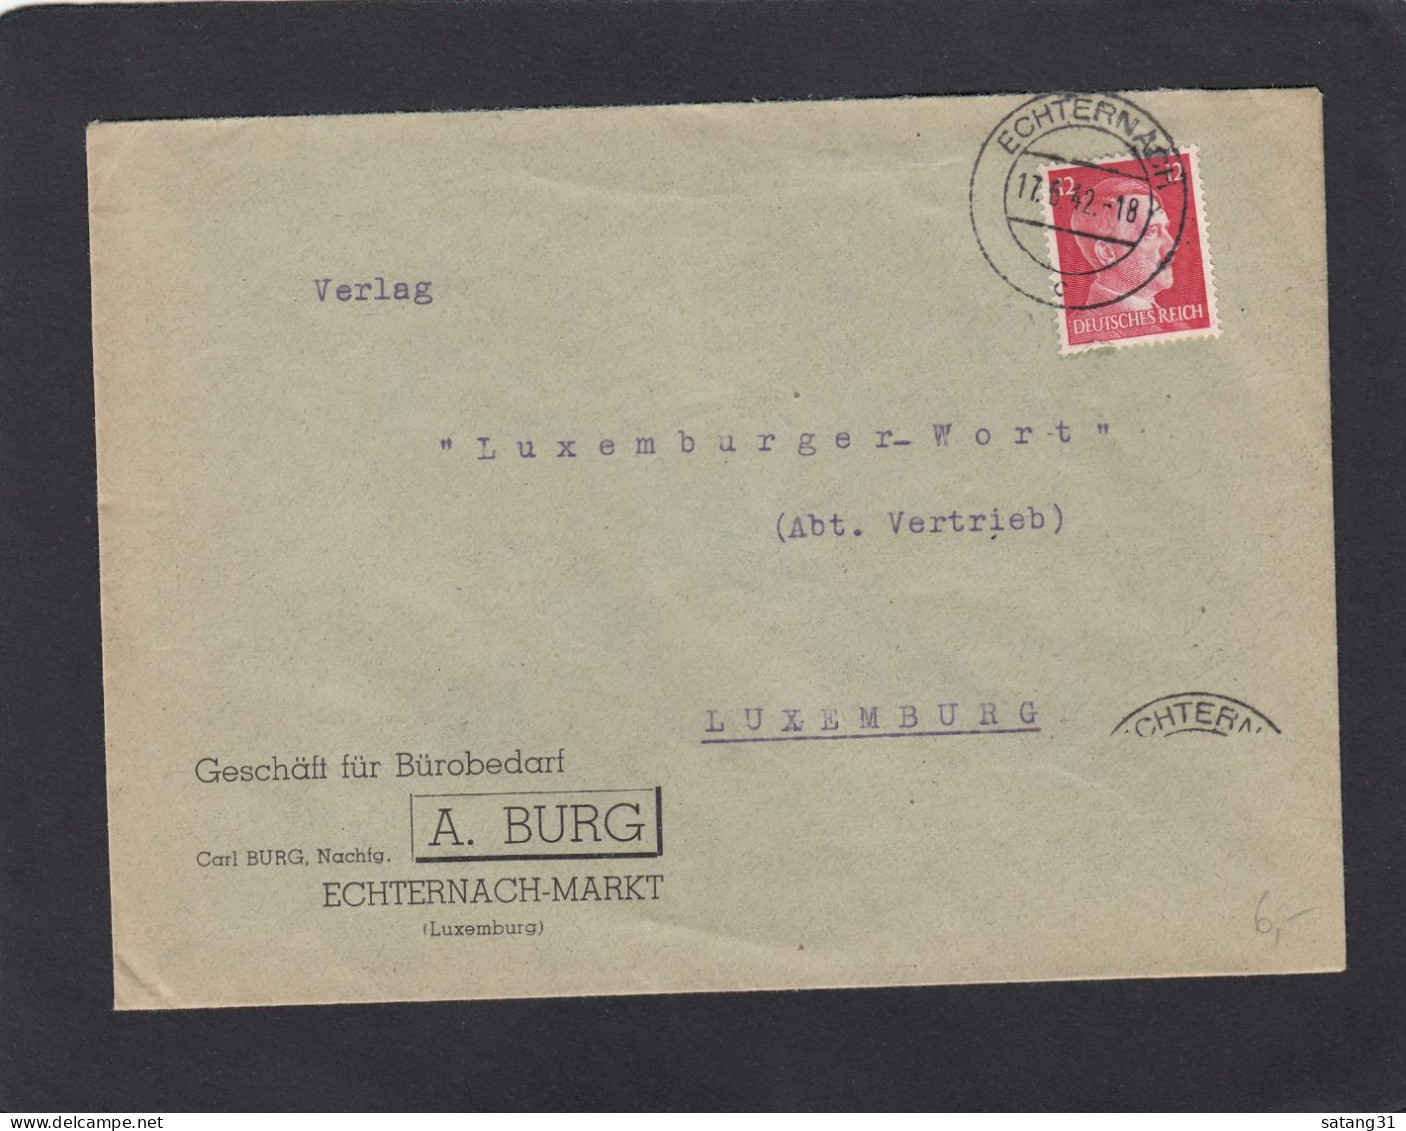 GESCHÄFT FÜR BÜROBEDARF, ECHTERNACH - MARKT. - 1940-1944 German Occupation